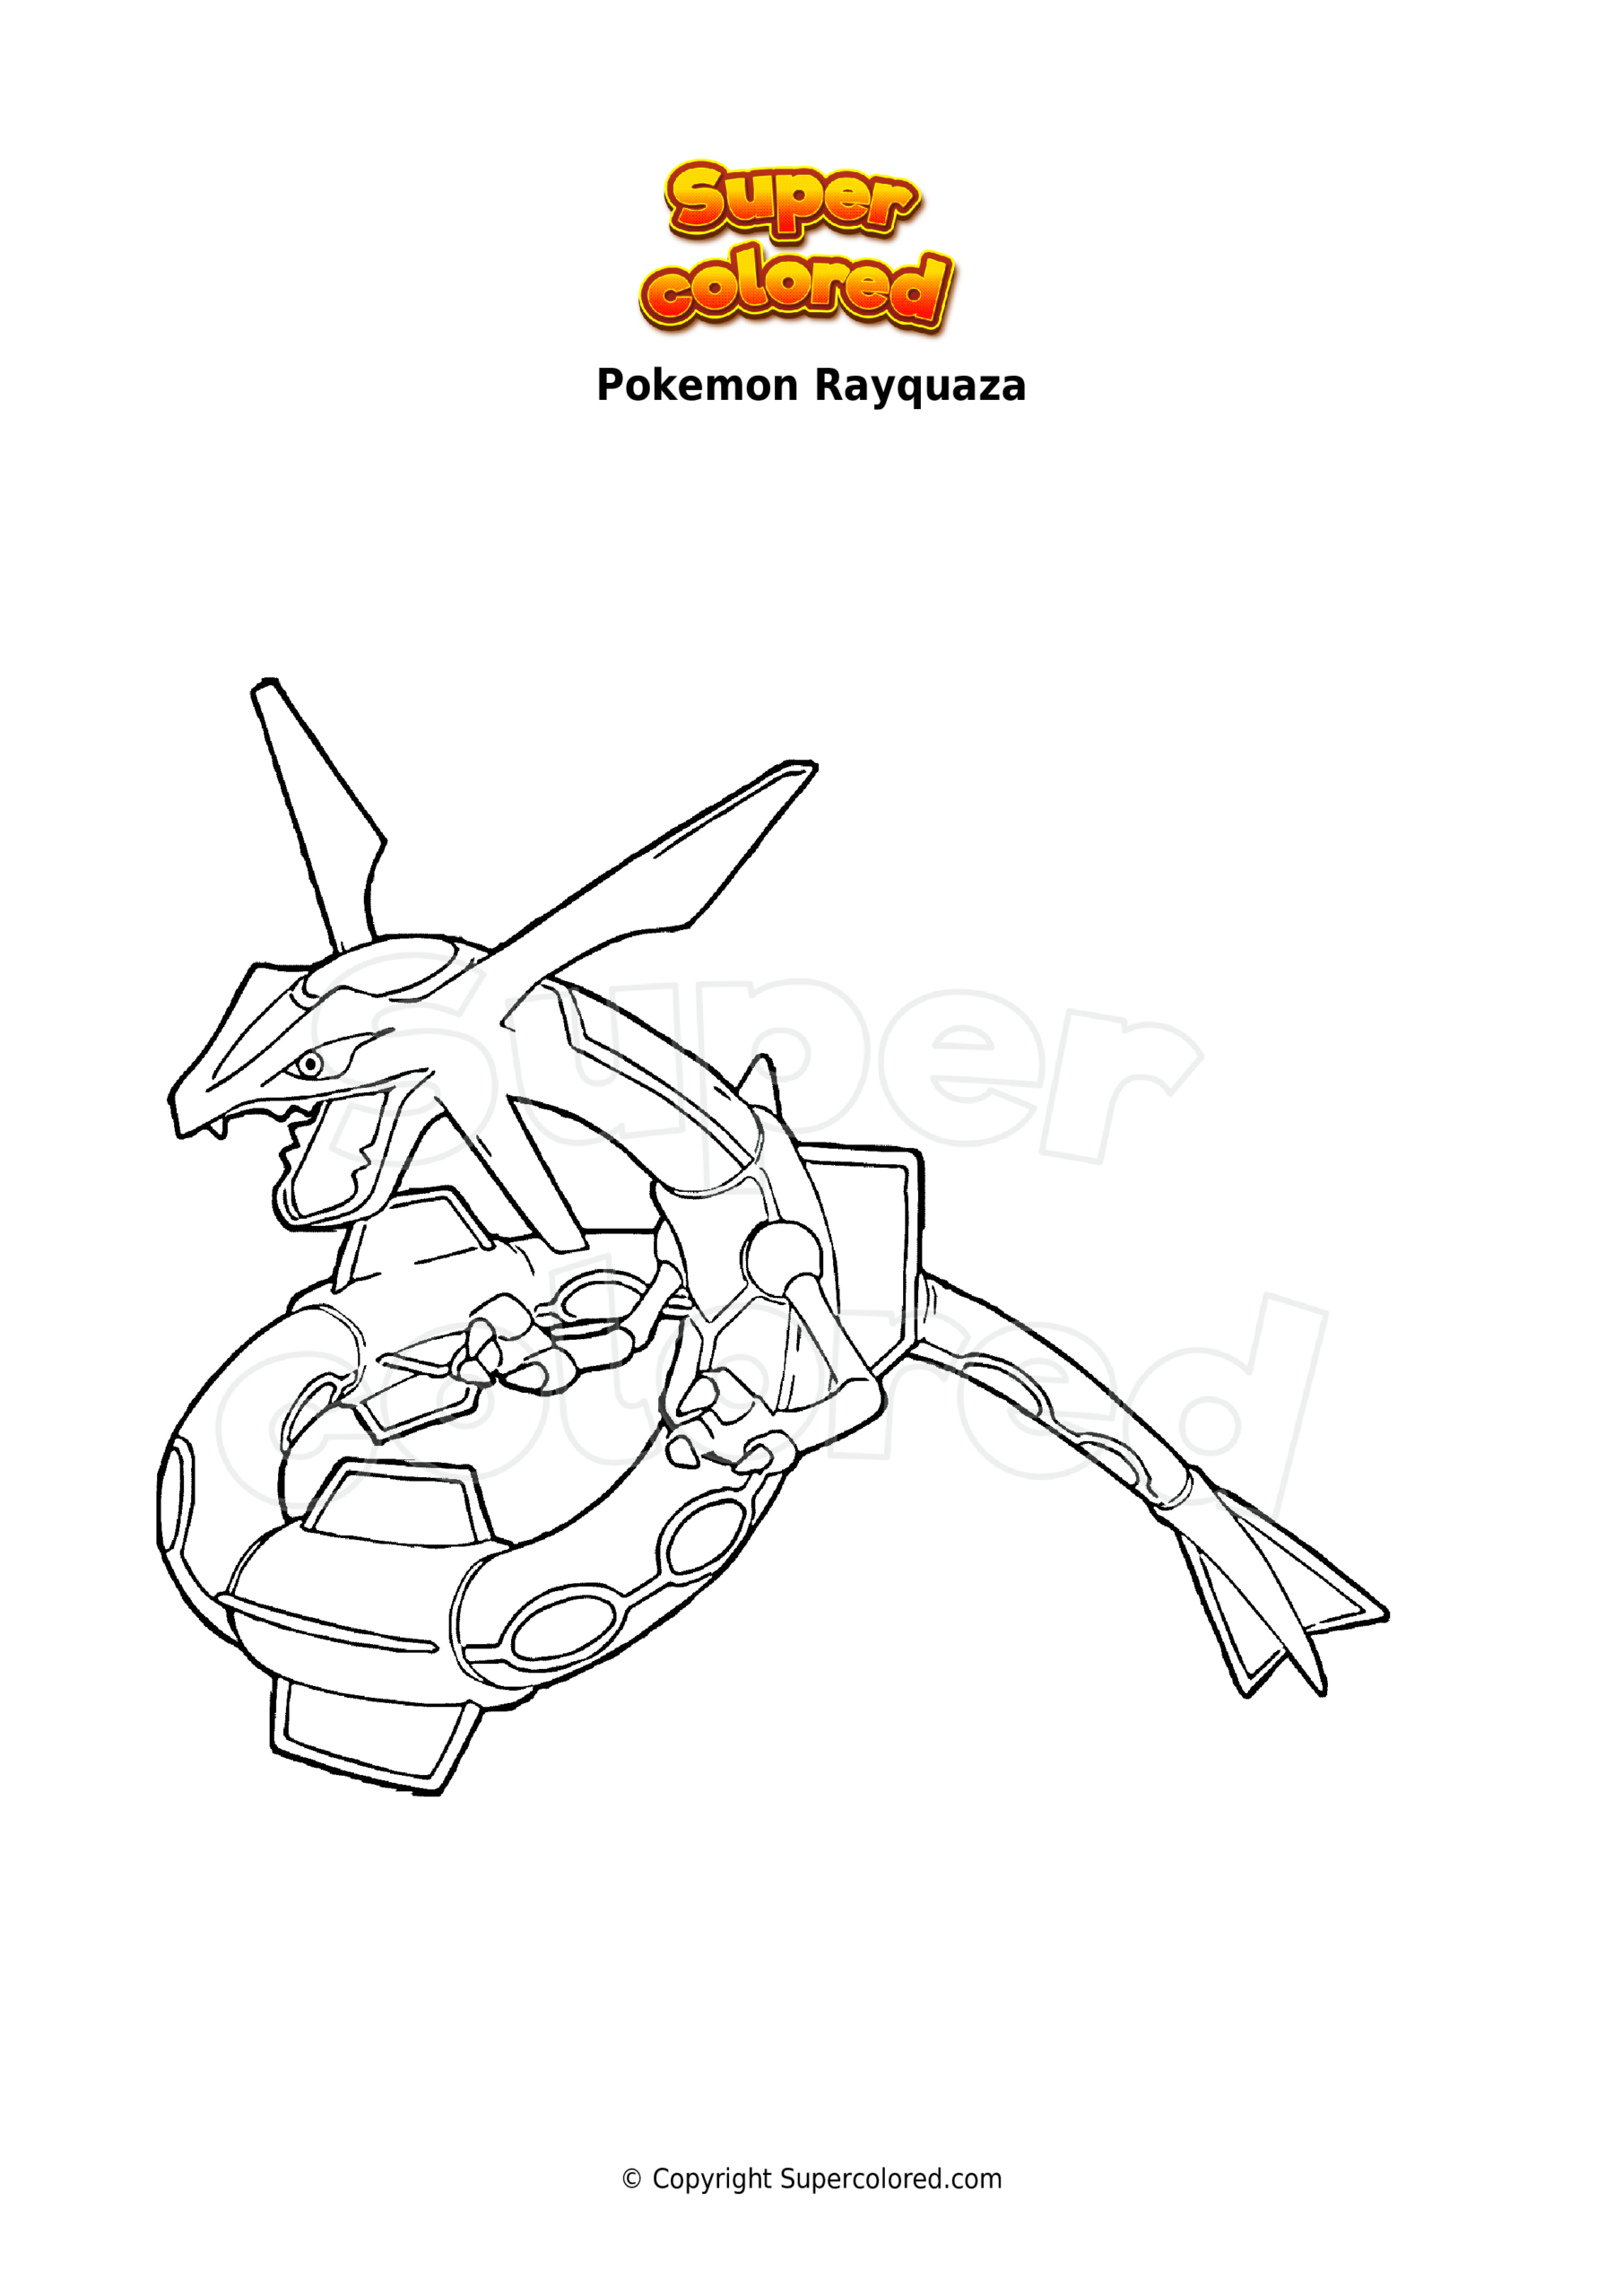 Coloriage Pokemon Rayquaza - Supercolored tout Coloriage Pokemon Rayquaza